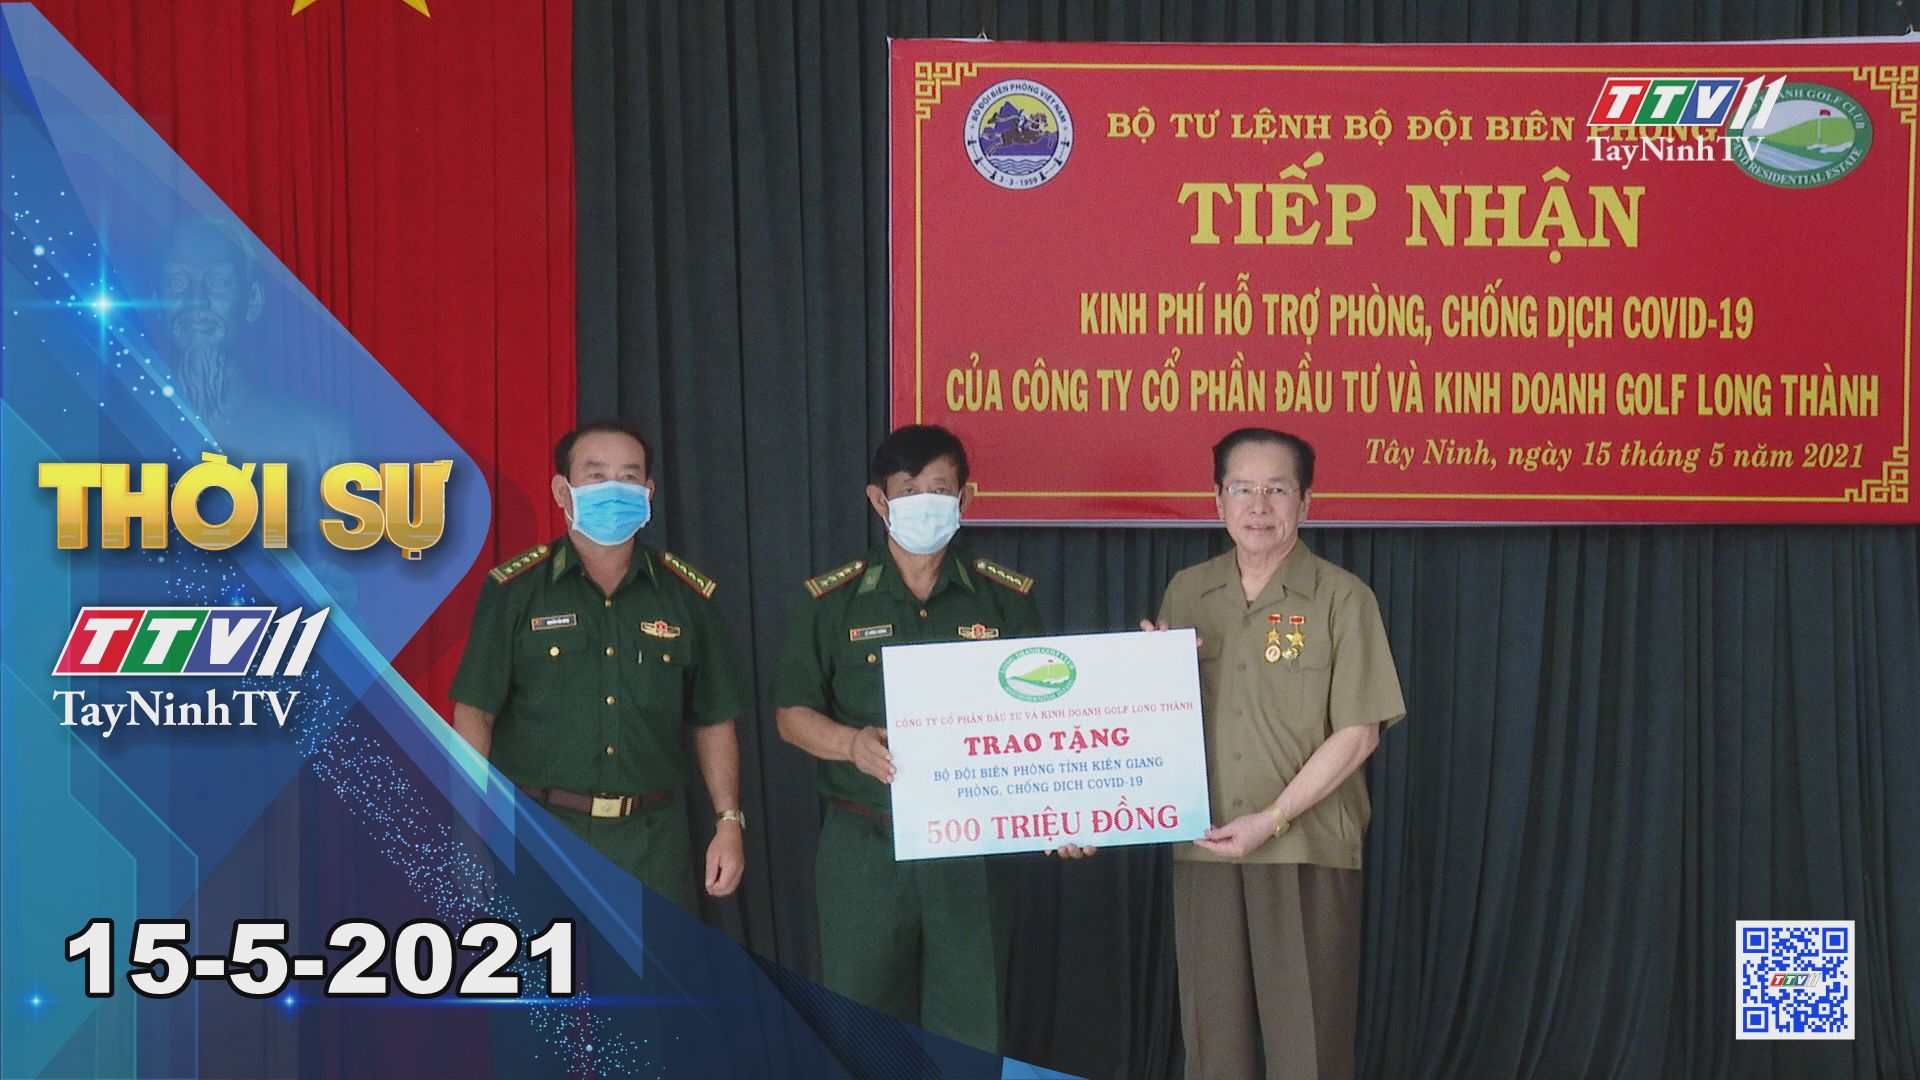 Thời sự Tây Ninh 15-5-2021 | Tin tức hôm nay | TayNinhTV